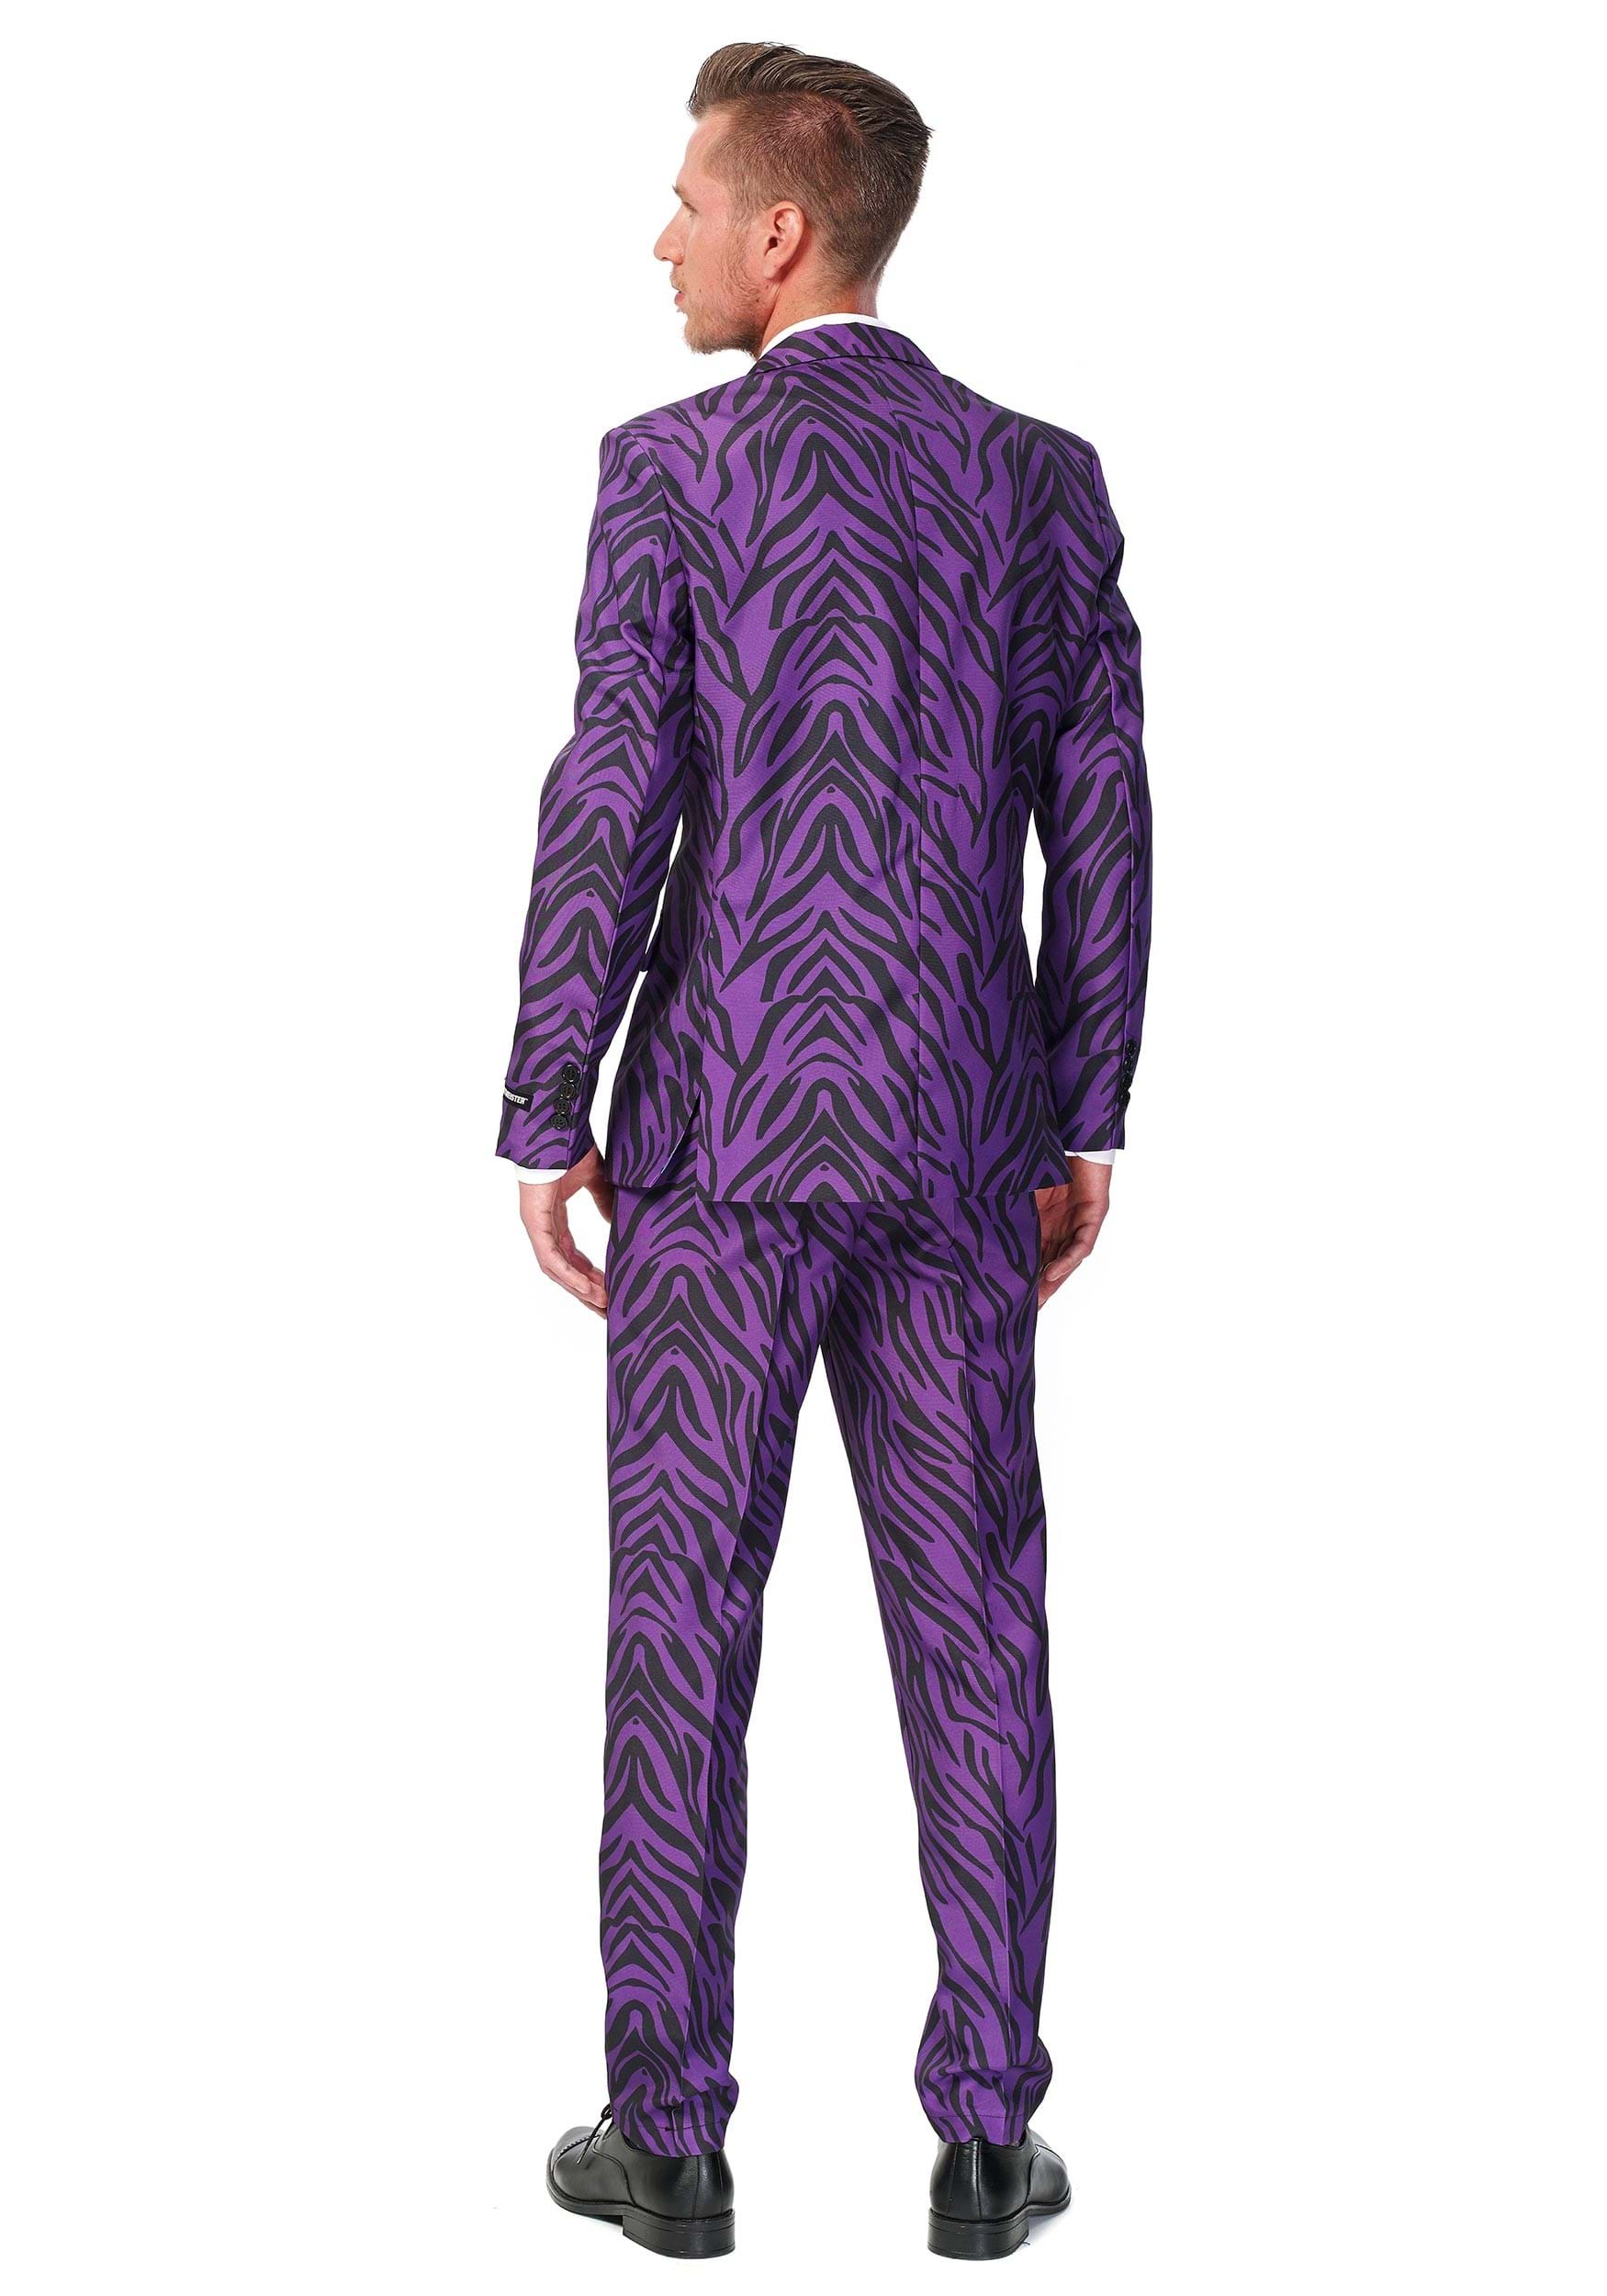 Men's SuitMeister Basic Pimp Tiger Suit Fancy Dress Costume